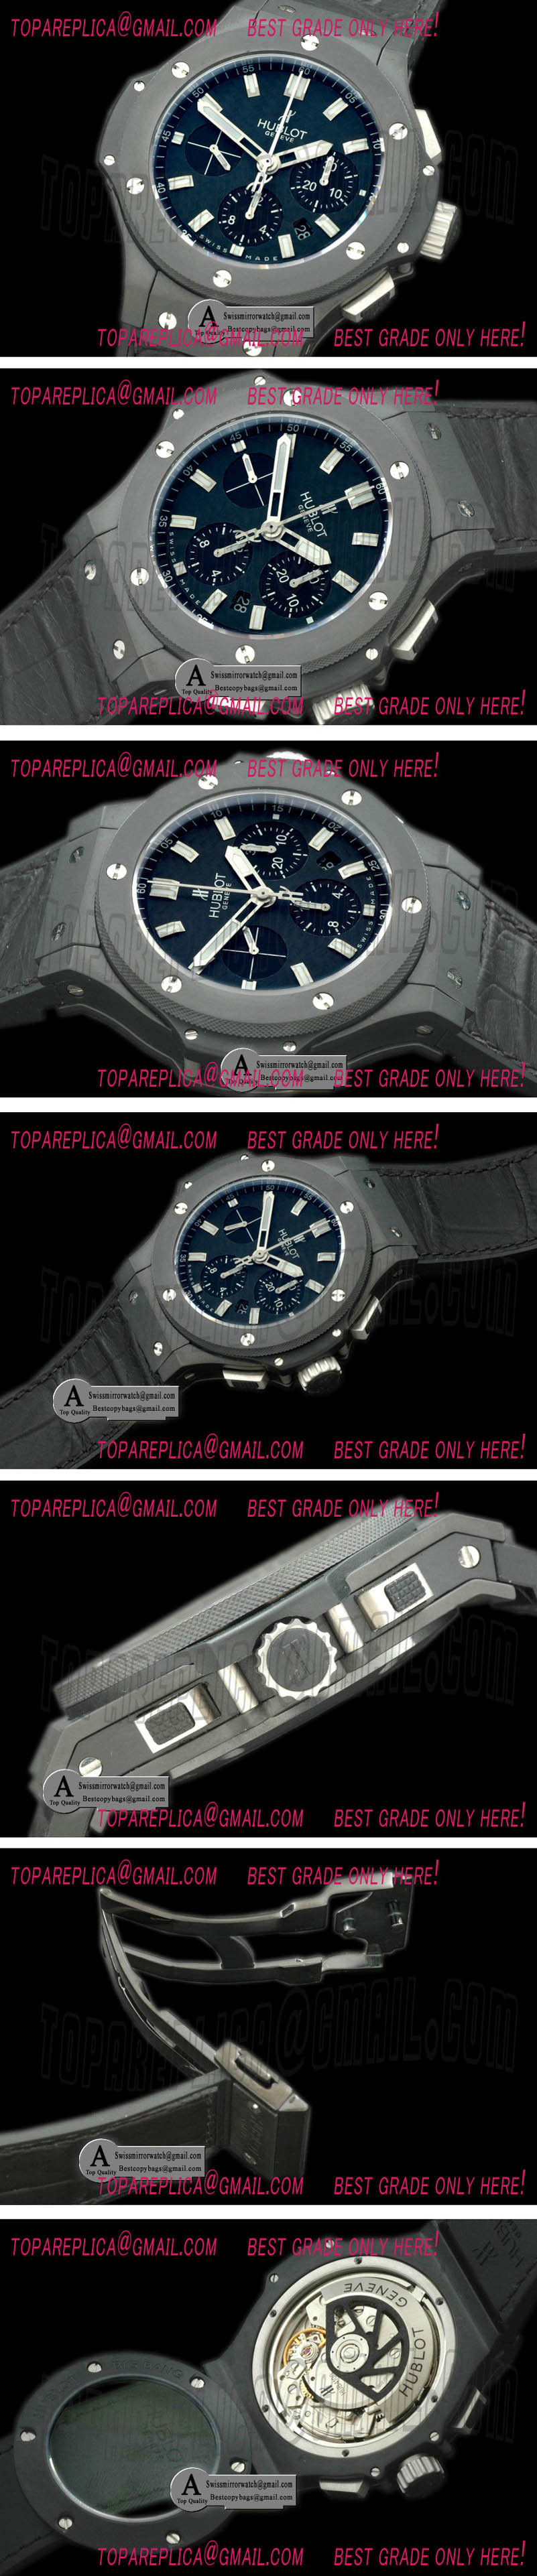 Hublot 301.CI.1770.RX Big Bang Black Magic II Ceramic/Ceramic/Leather Black A-7750 28800 Replica Watches